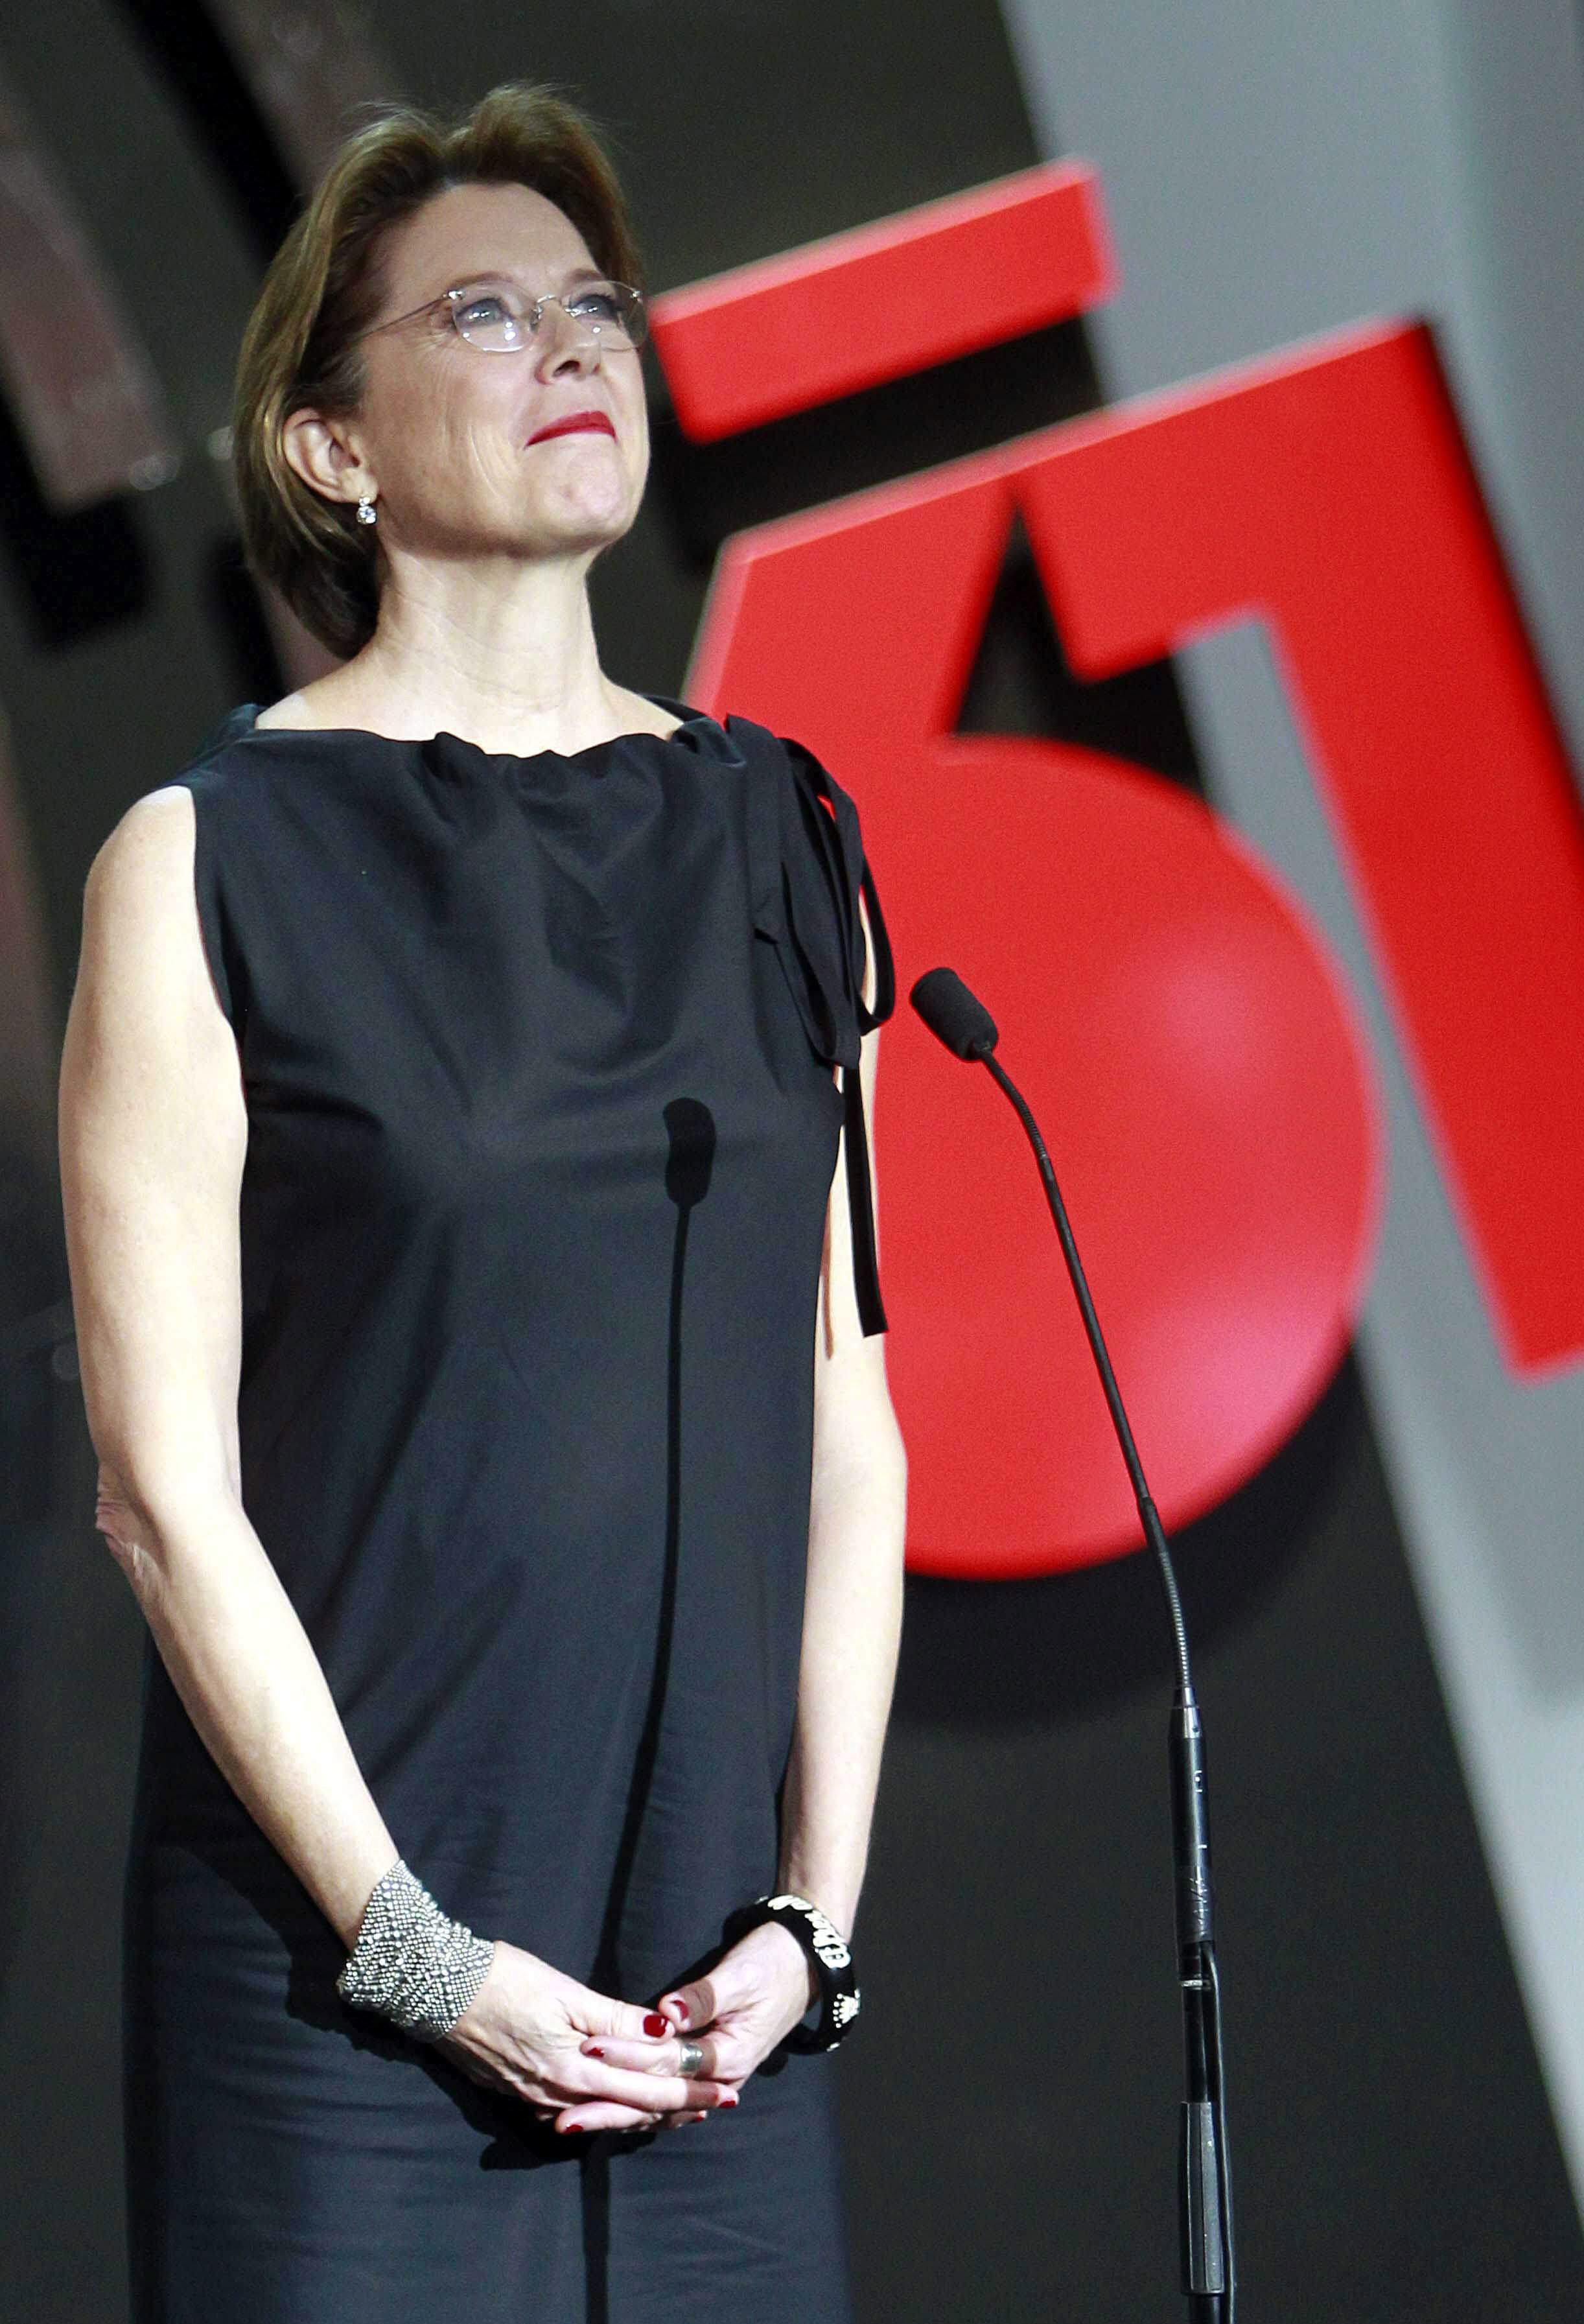 Η Ανέτ Μπένινγκ πρόεδρος της κριτικής επιτροπής στη Μόστρα